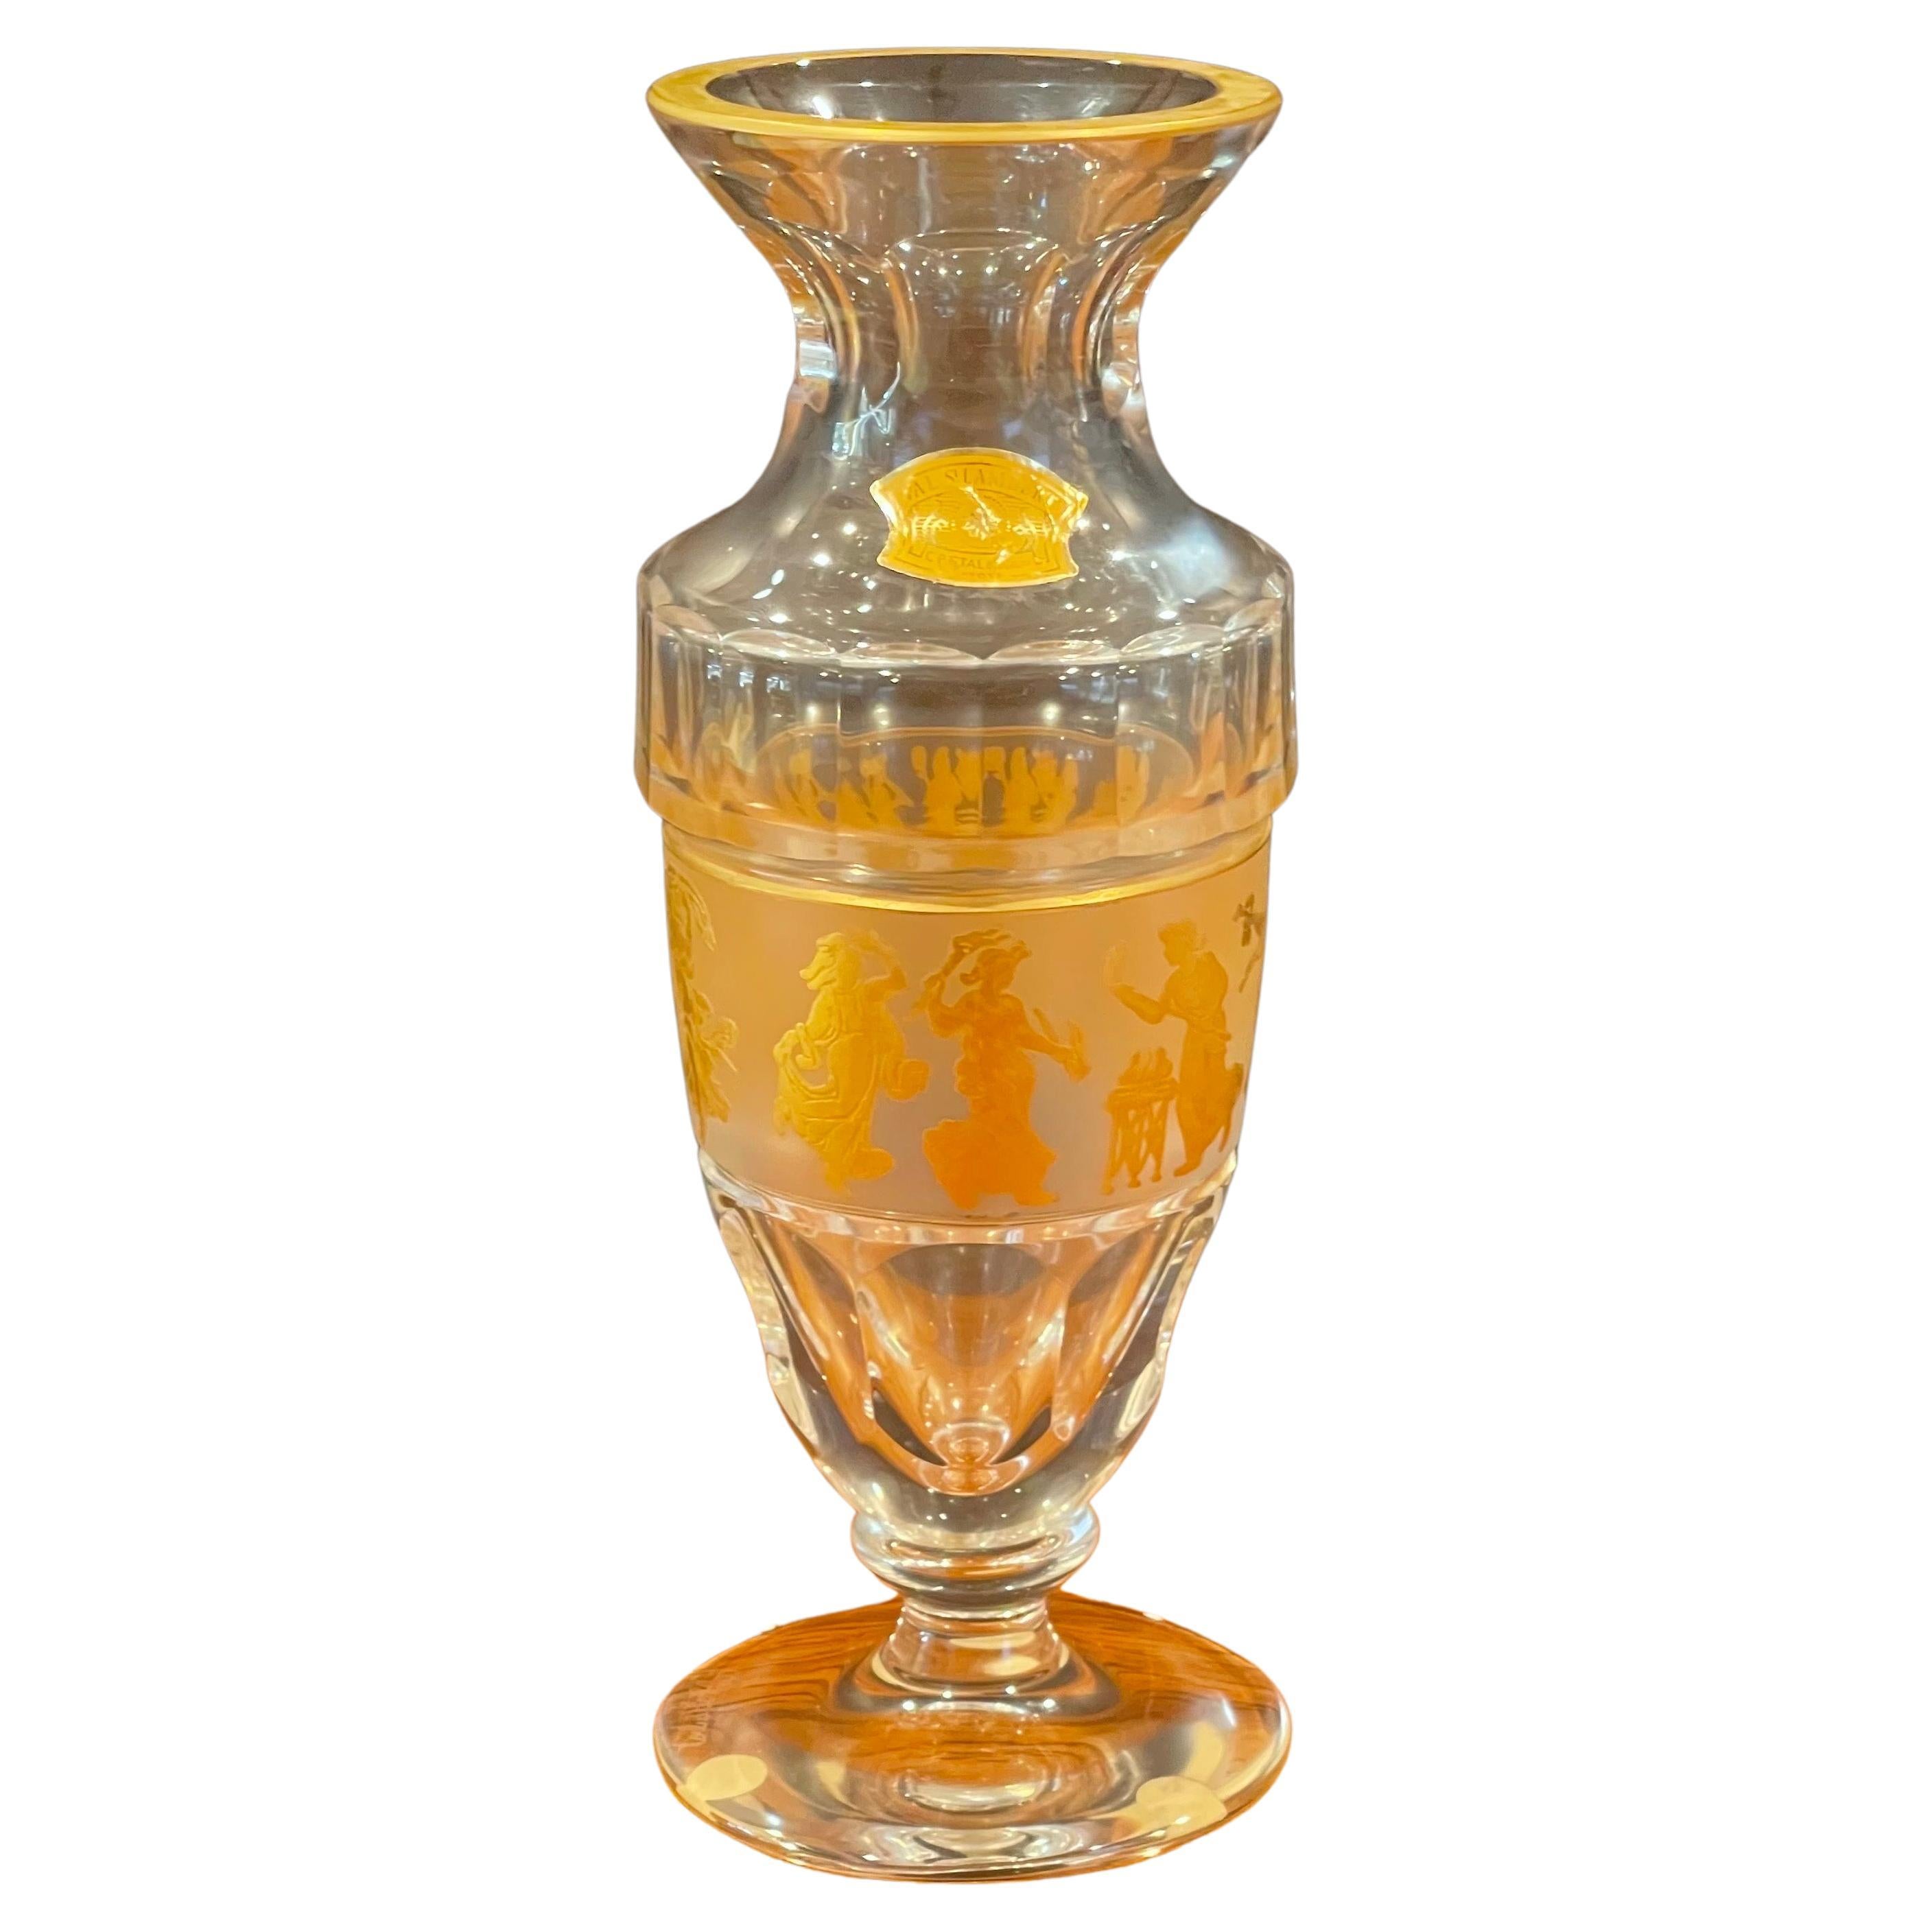 "Danse de la Flore" Gold Gilt Crystal Vase by Val Saint Lambert with Box